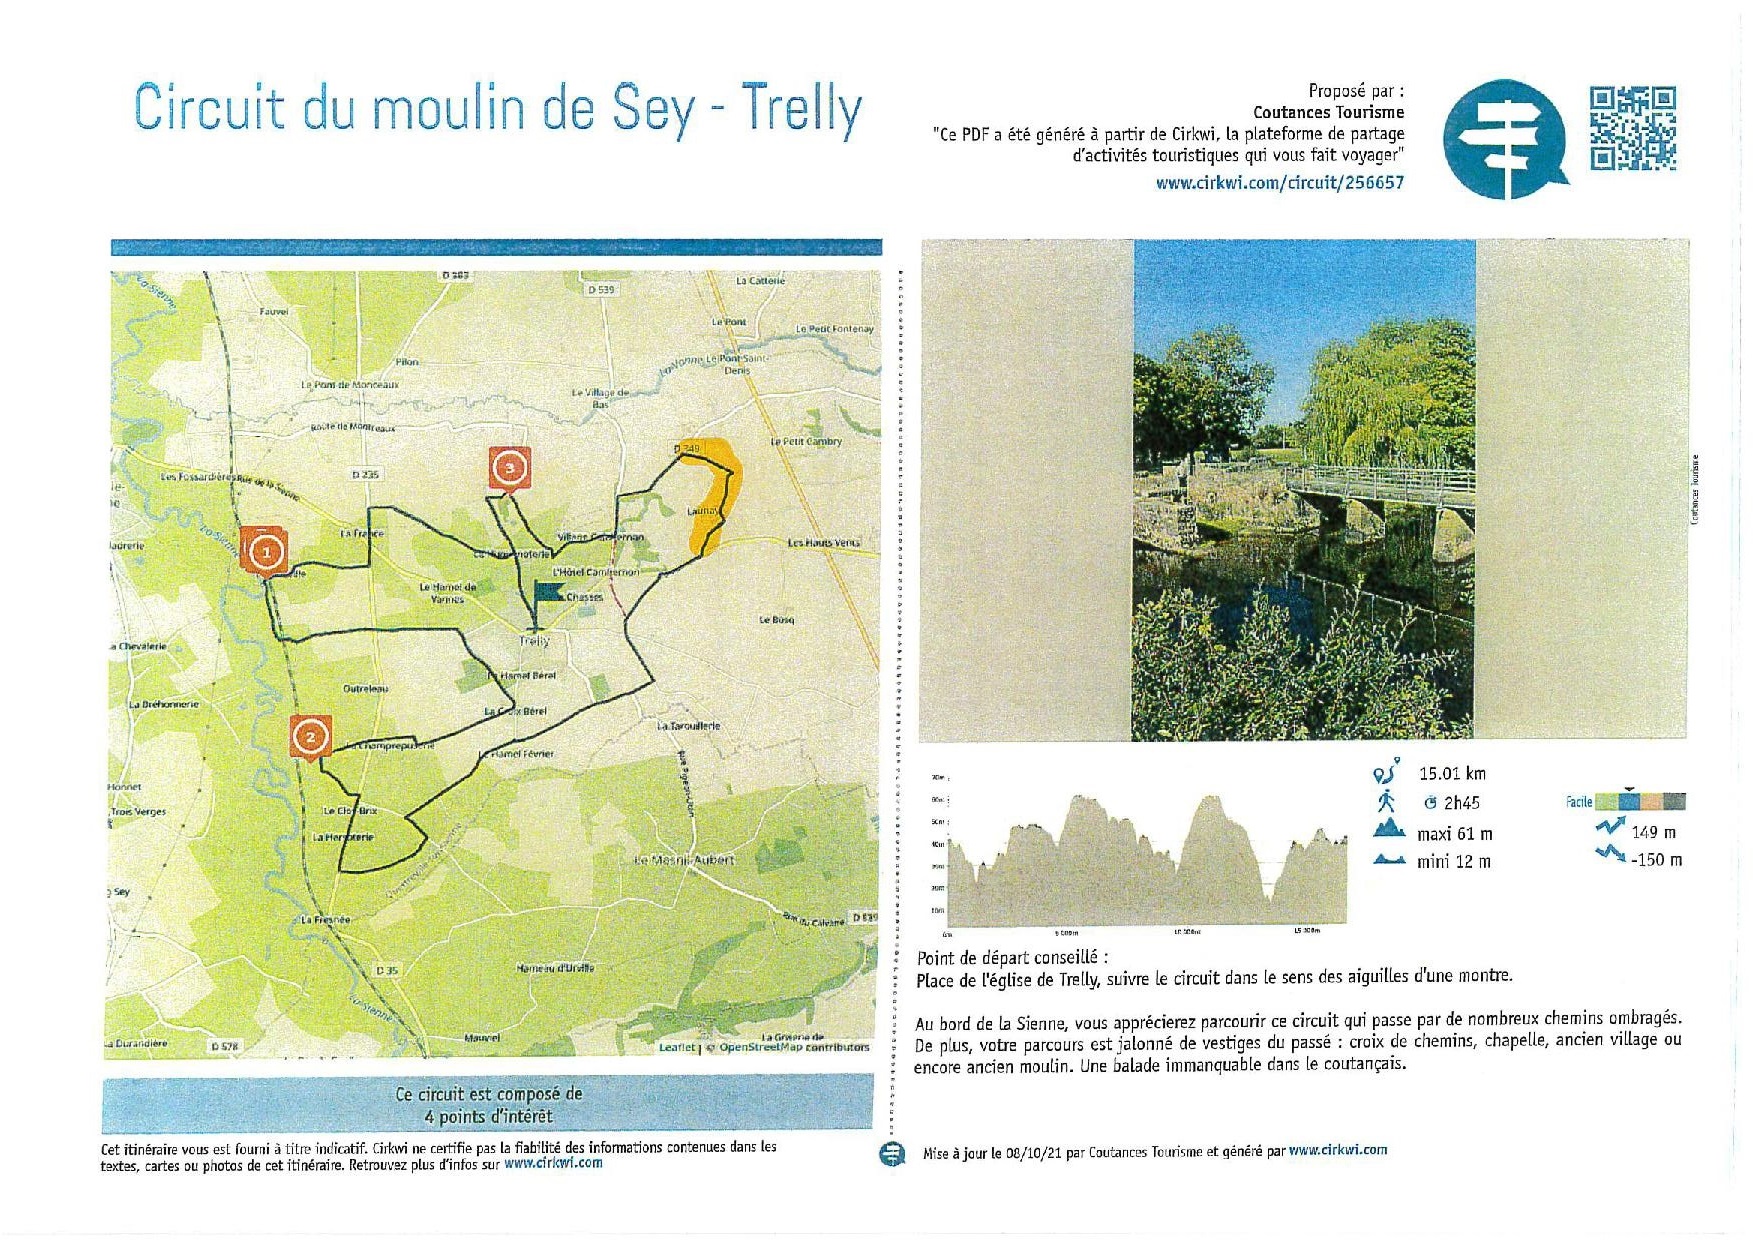 C Users DLEDOUX Documents Mairie Enquète publique Trelly plan circuit moulin de Sey